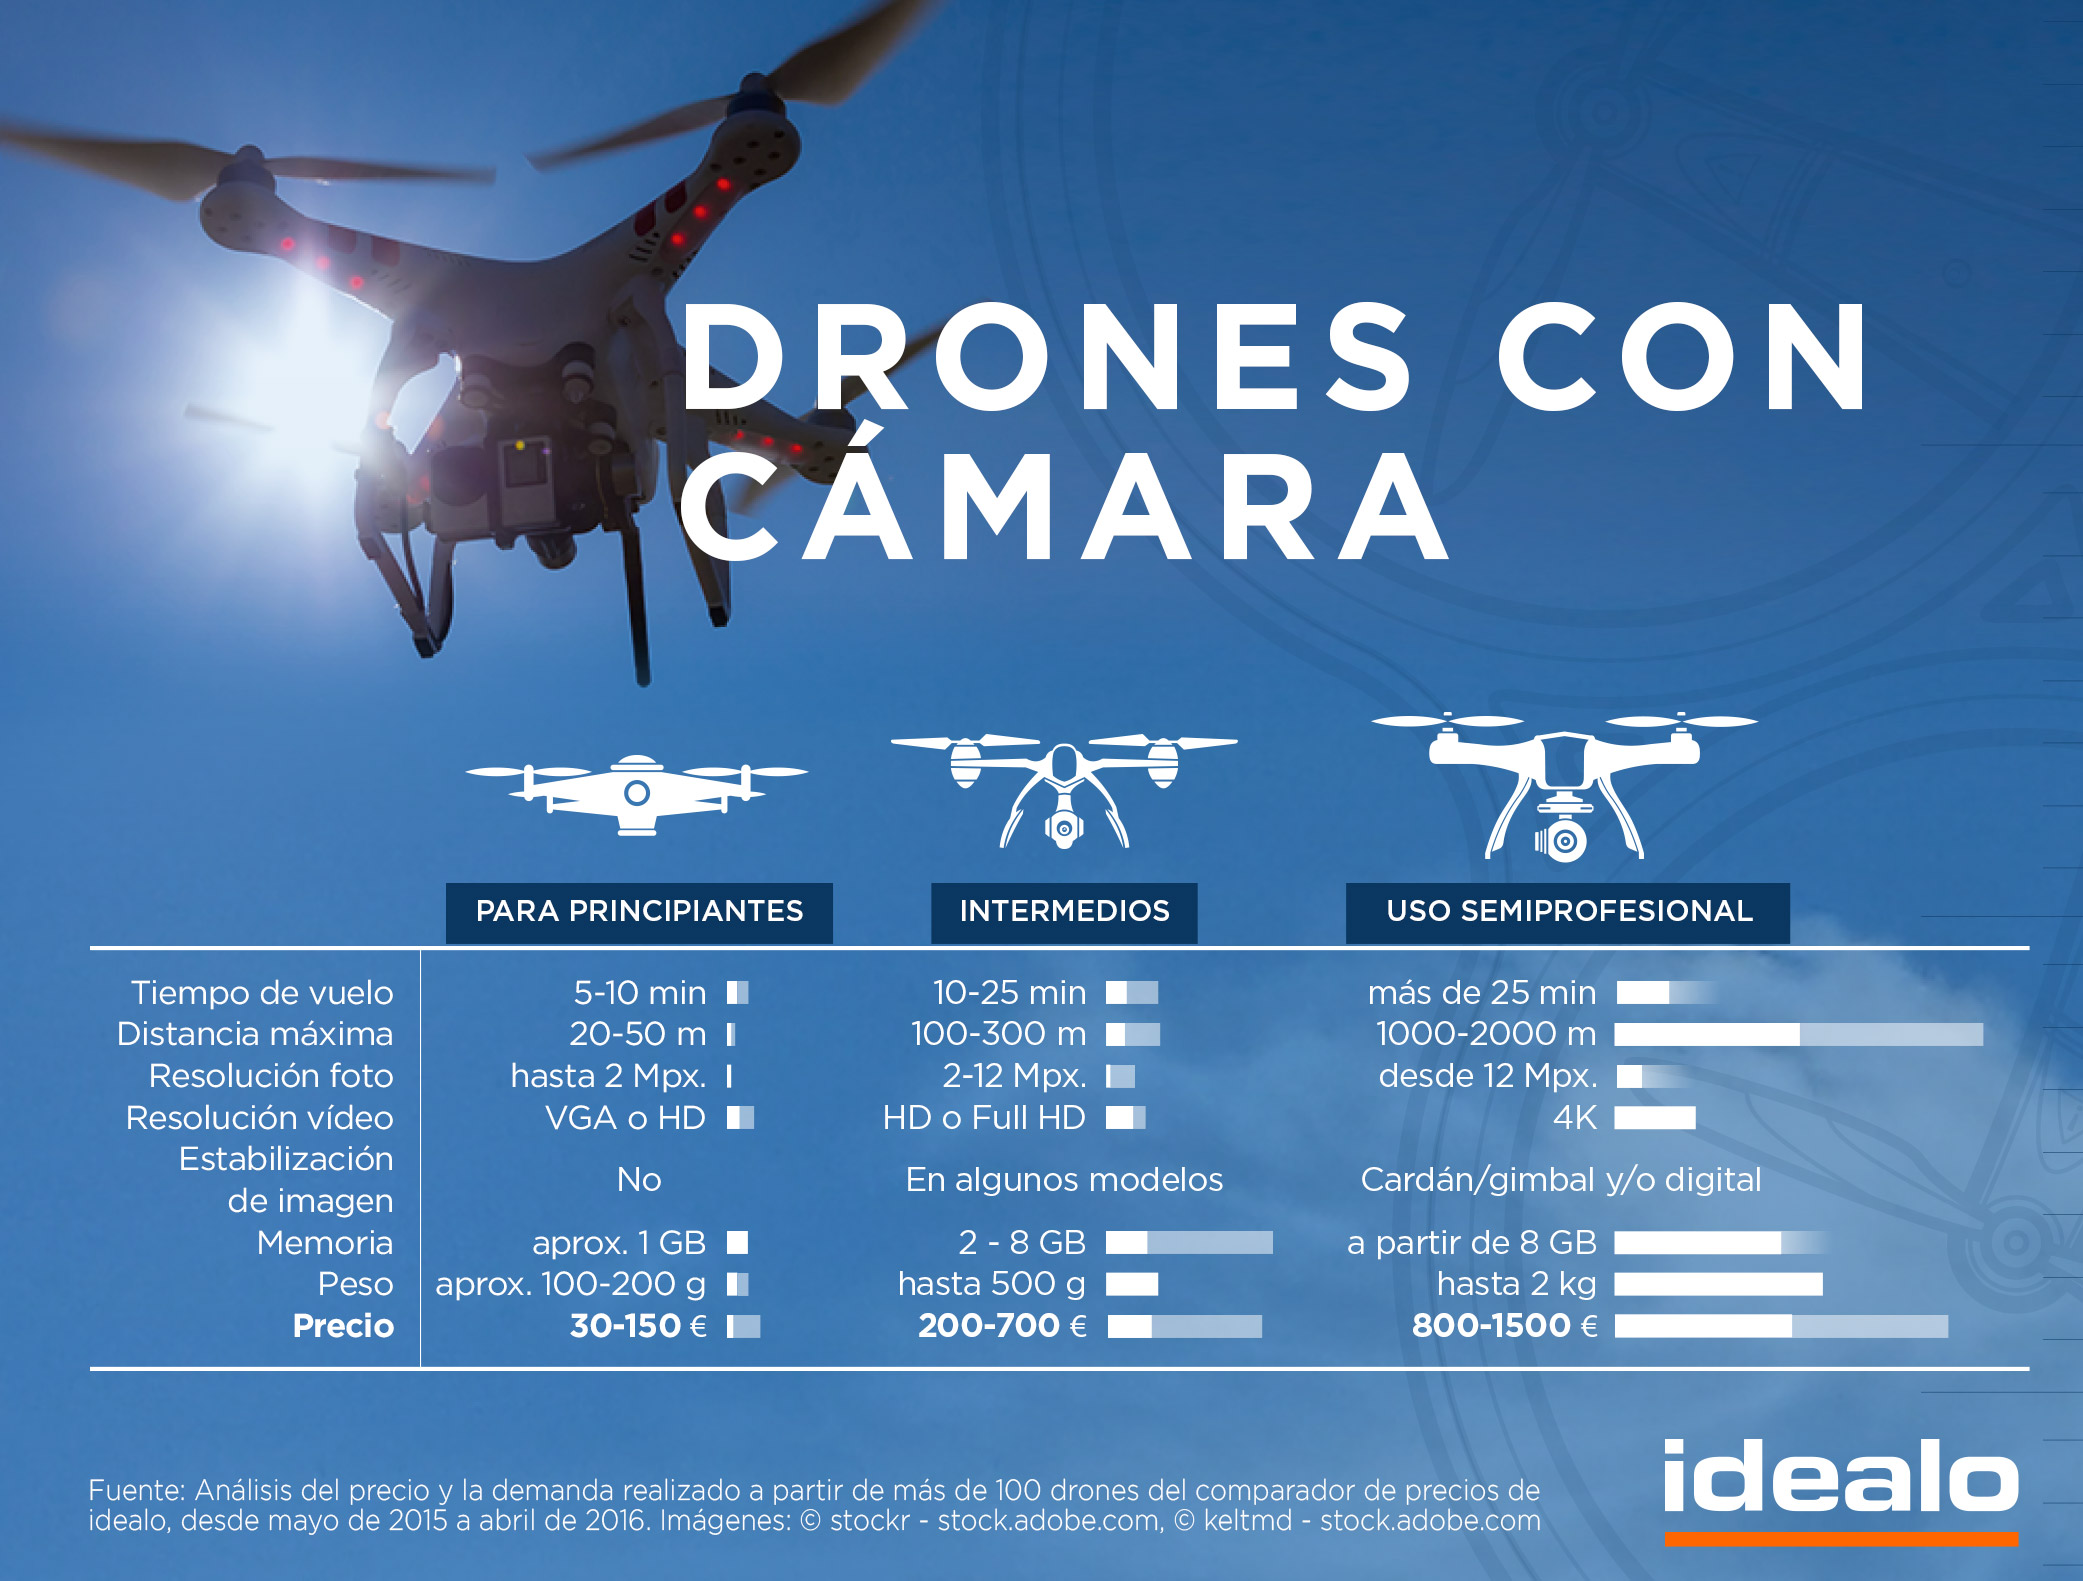 Tabla comparativa de los diferentes tipos de drones con cámara publicada por Idealo en su blog oficial. 